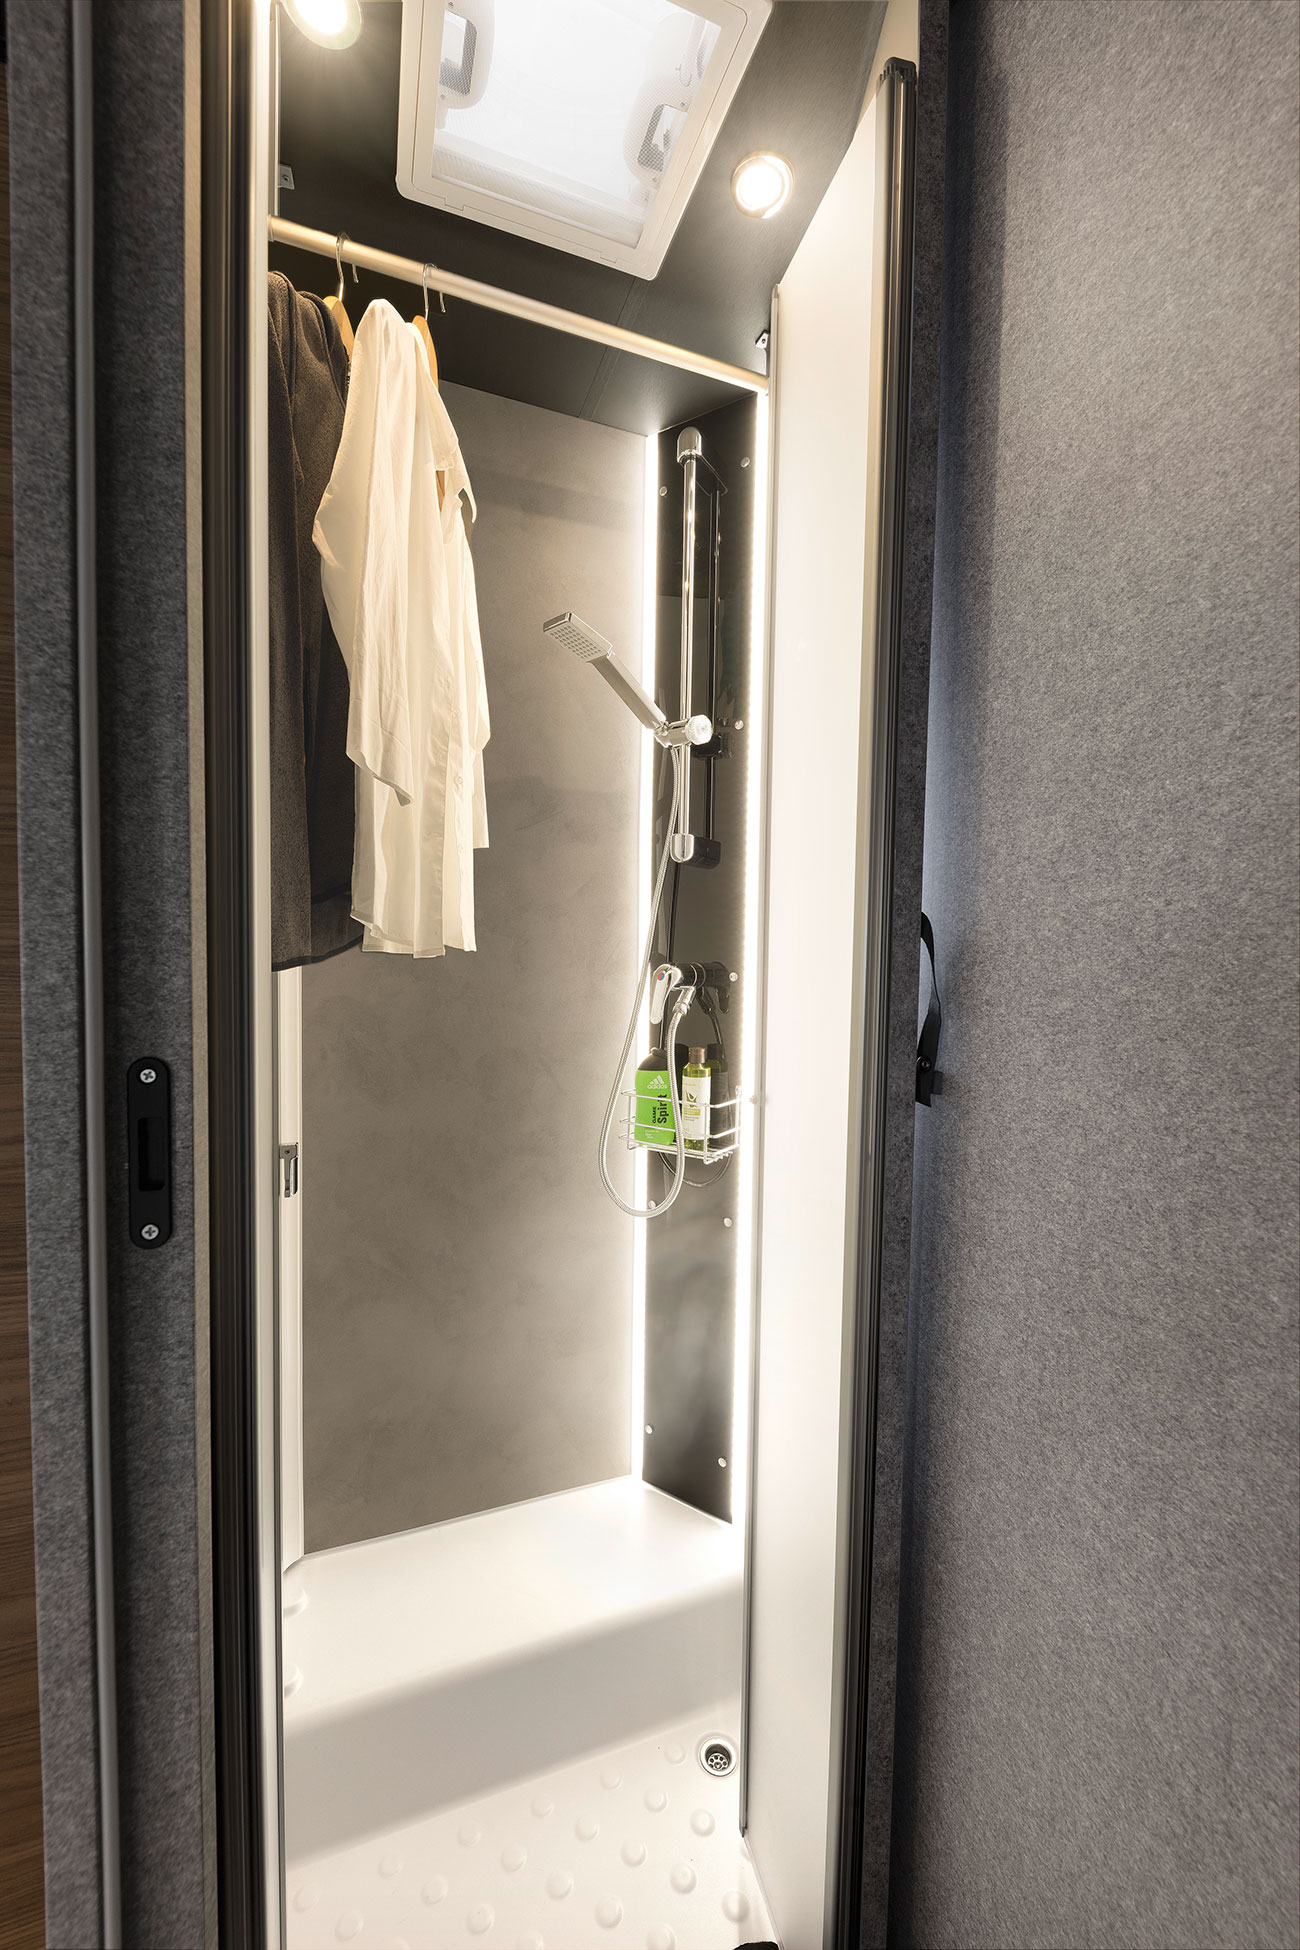 Die Dusche wird bei Nichtgebraucht zum Trockenraum für nasse Kleidung oder einfach zur Kleiderschrank-Erweiterung.